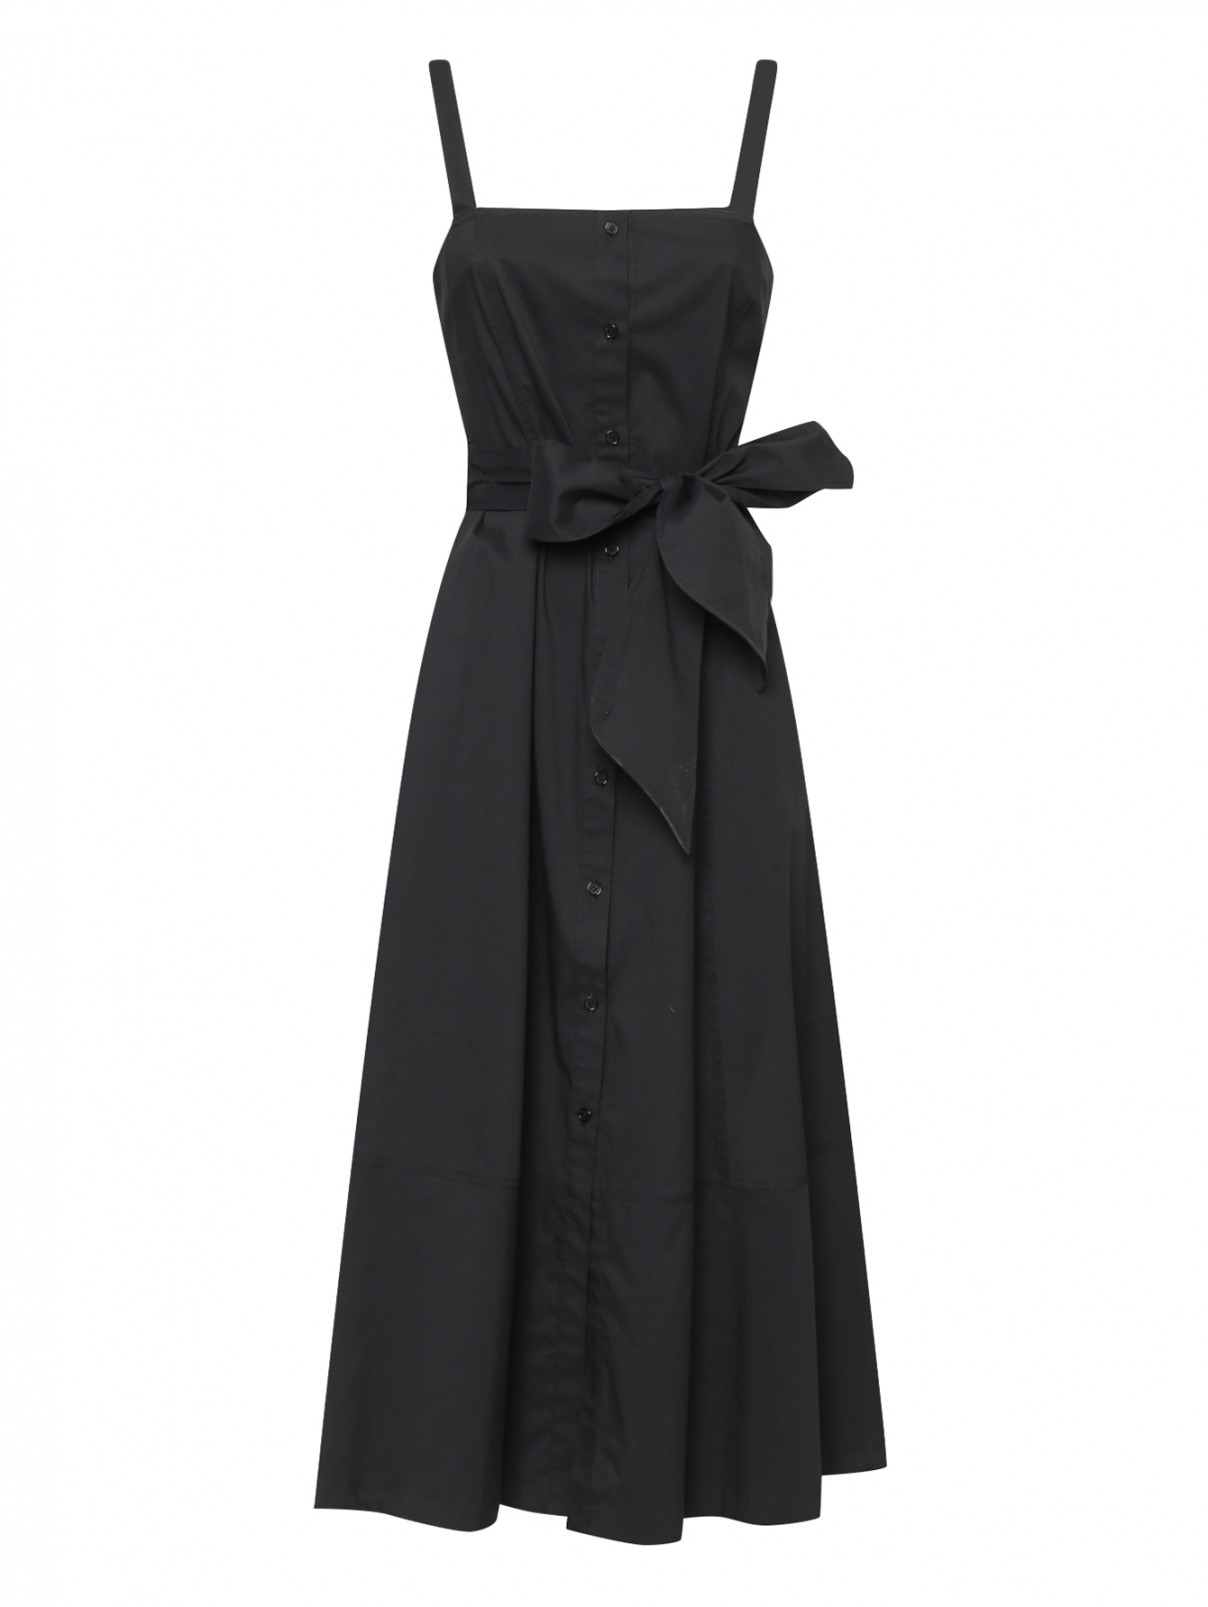 Платье из хлопка без рукавов Ли-Лу  –  Общий вид  – Цвет:  Черный